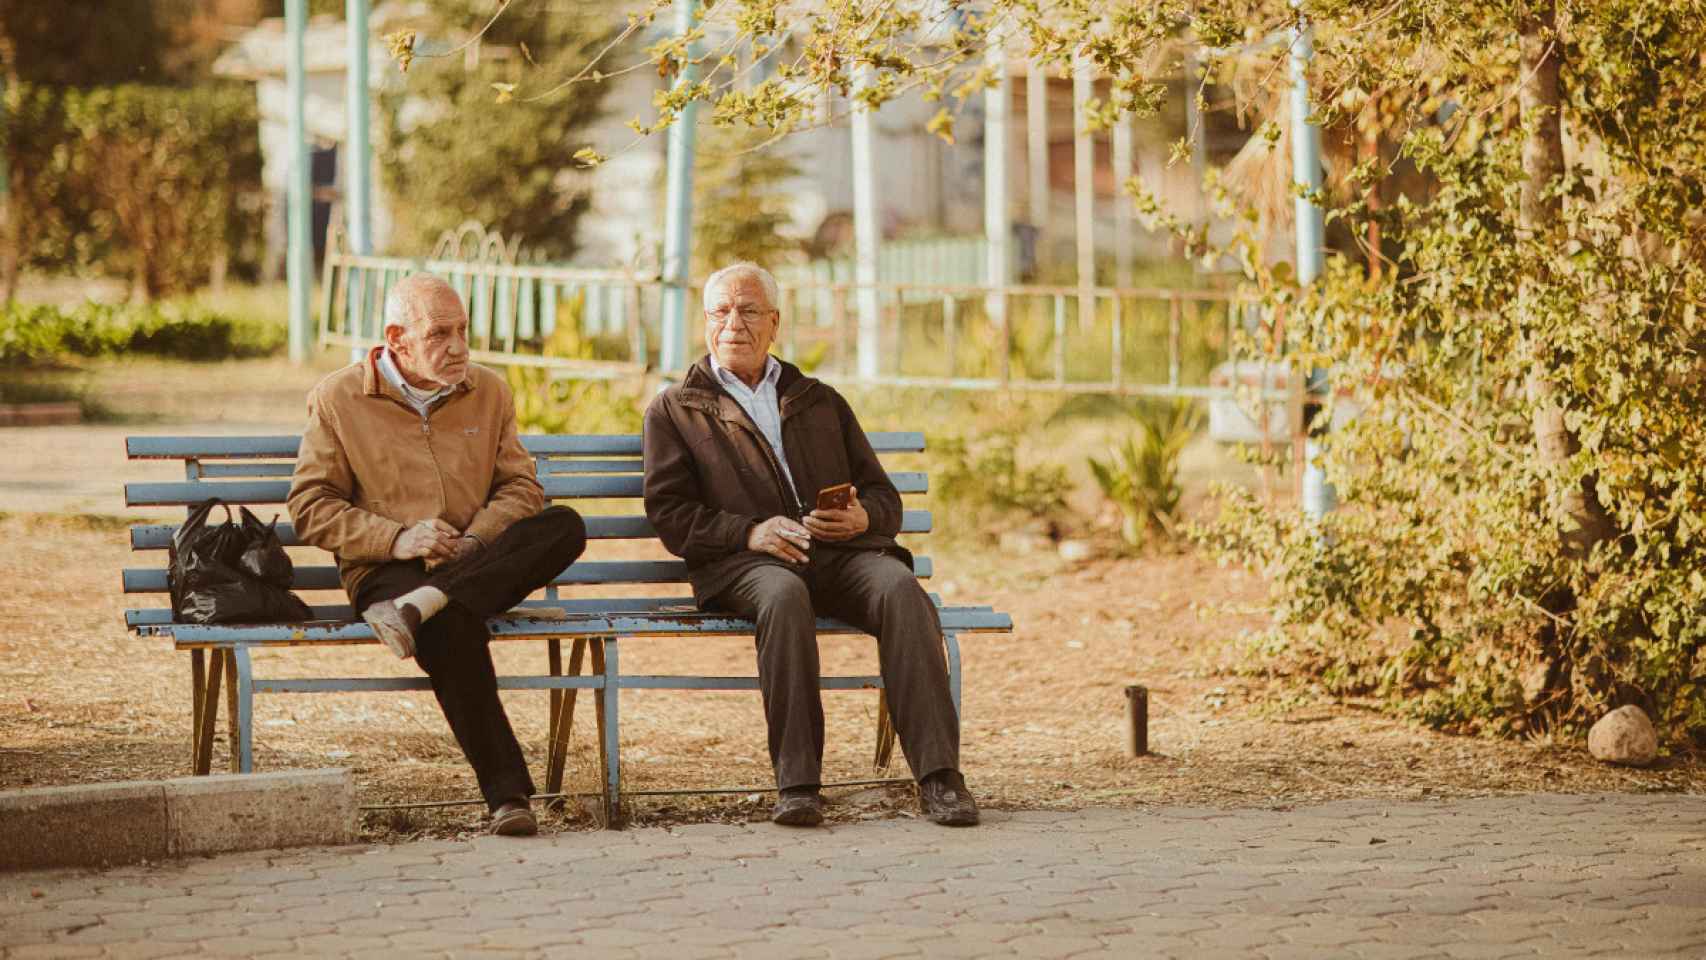 Imagen de archivo de dos personas mayores hablando en un banco